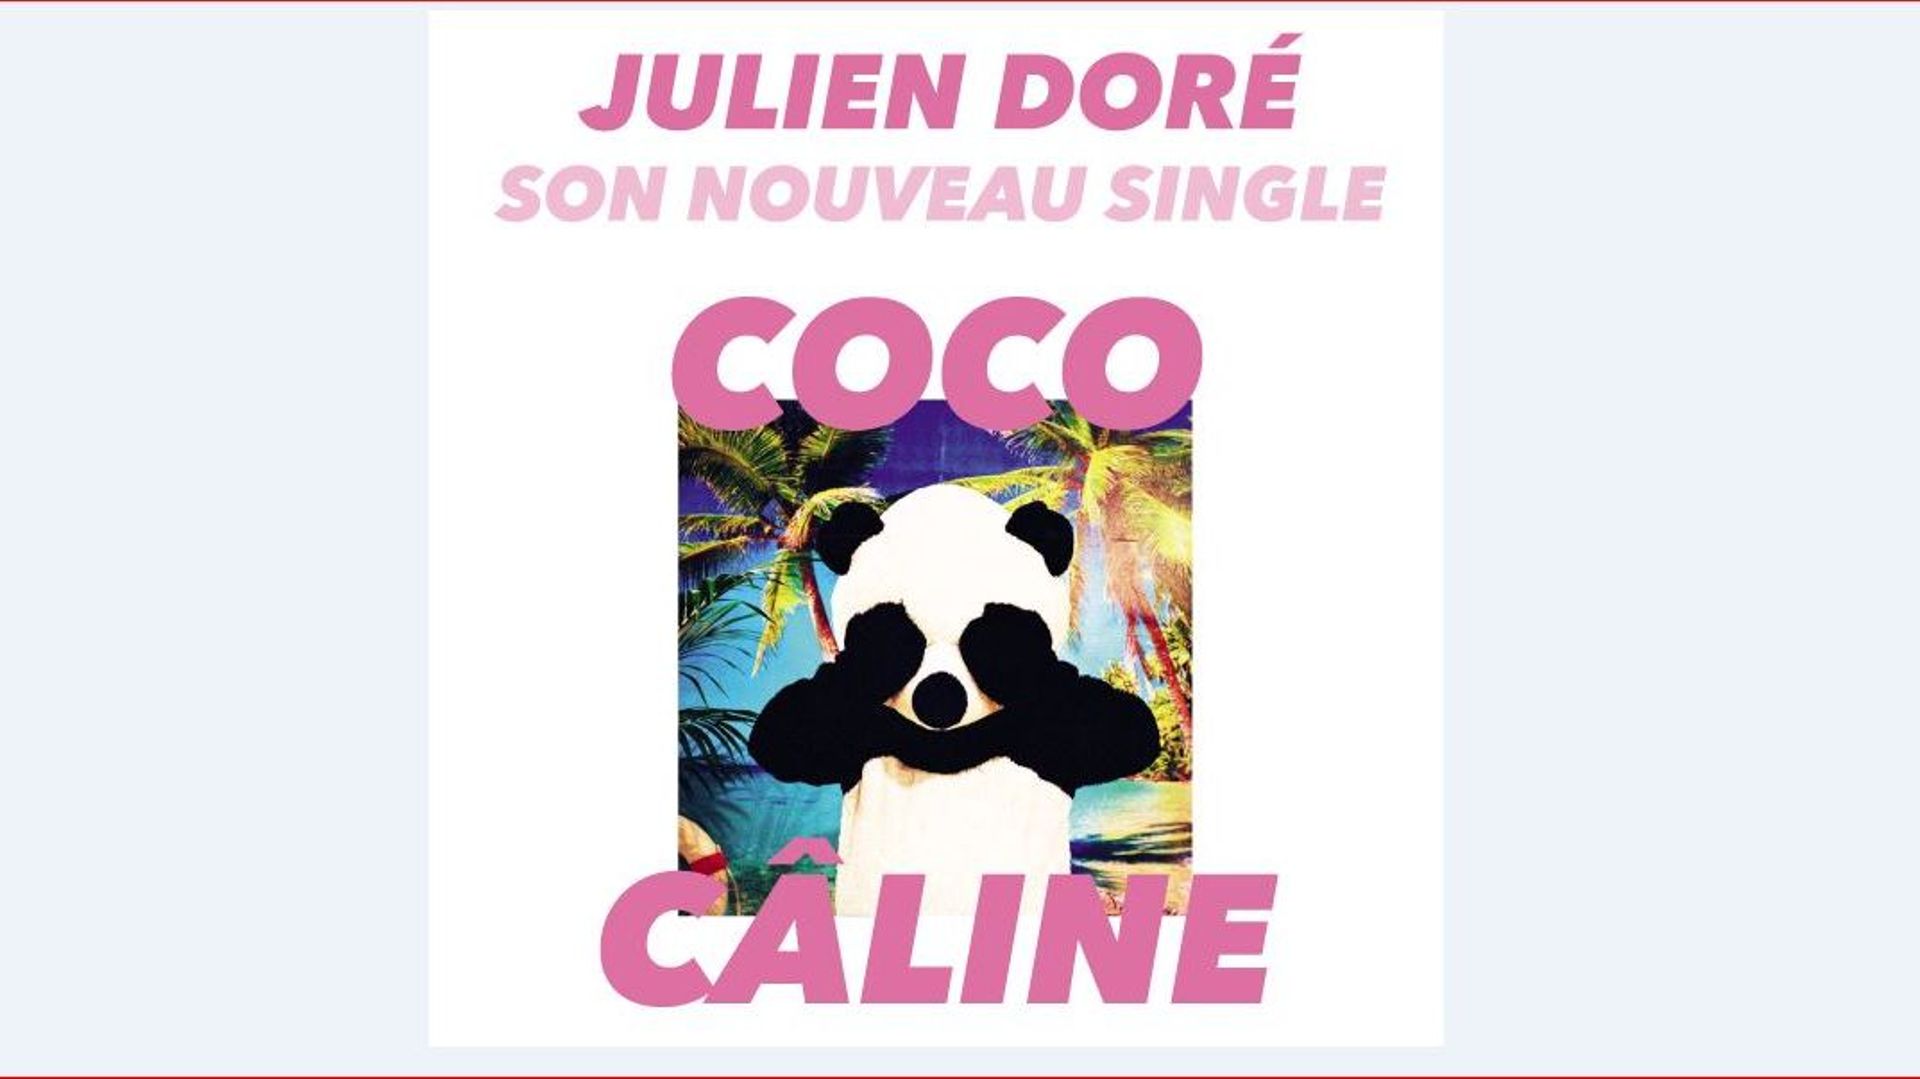 Le tout nouveau single de Julien Doré s'intitule "Coco Caline" !